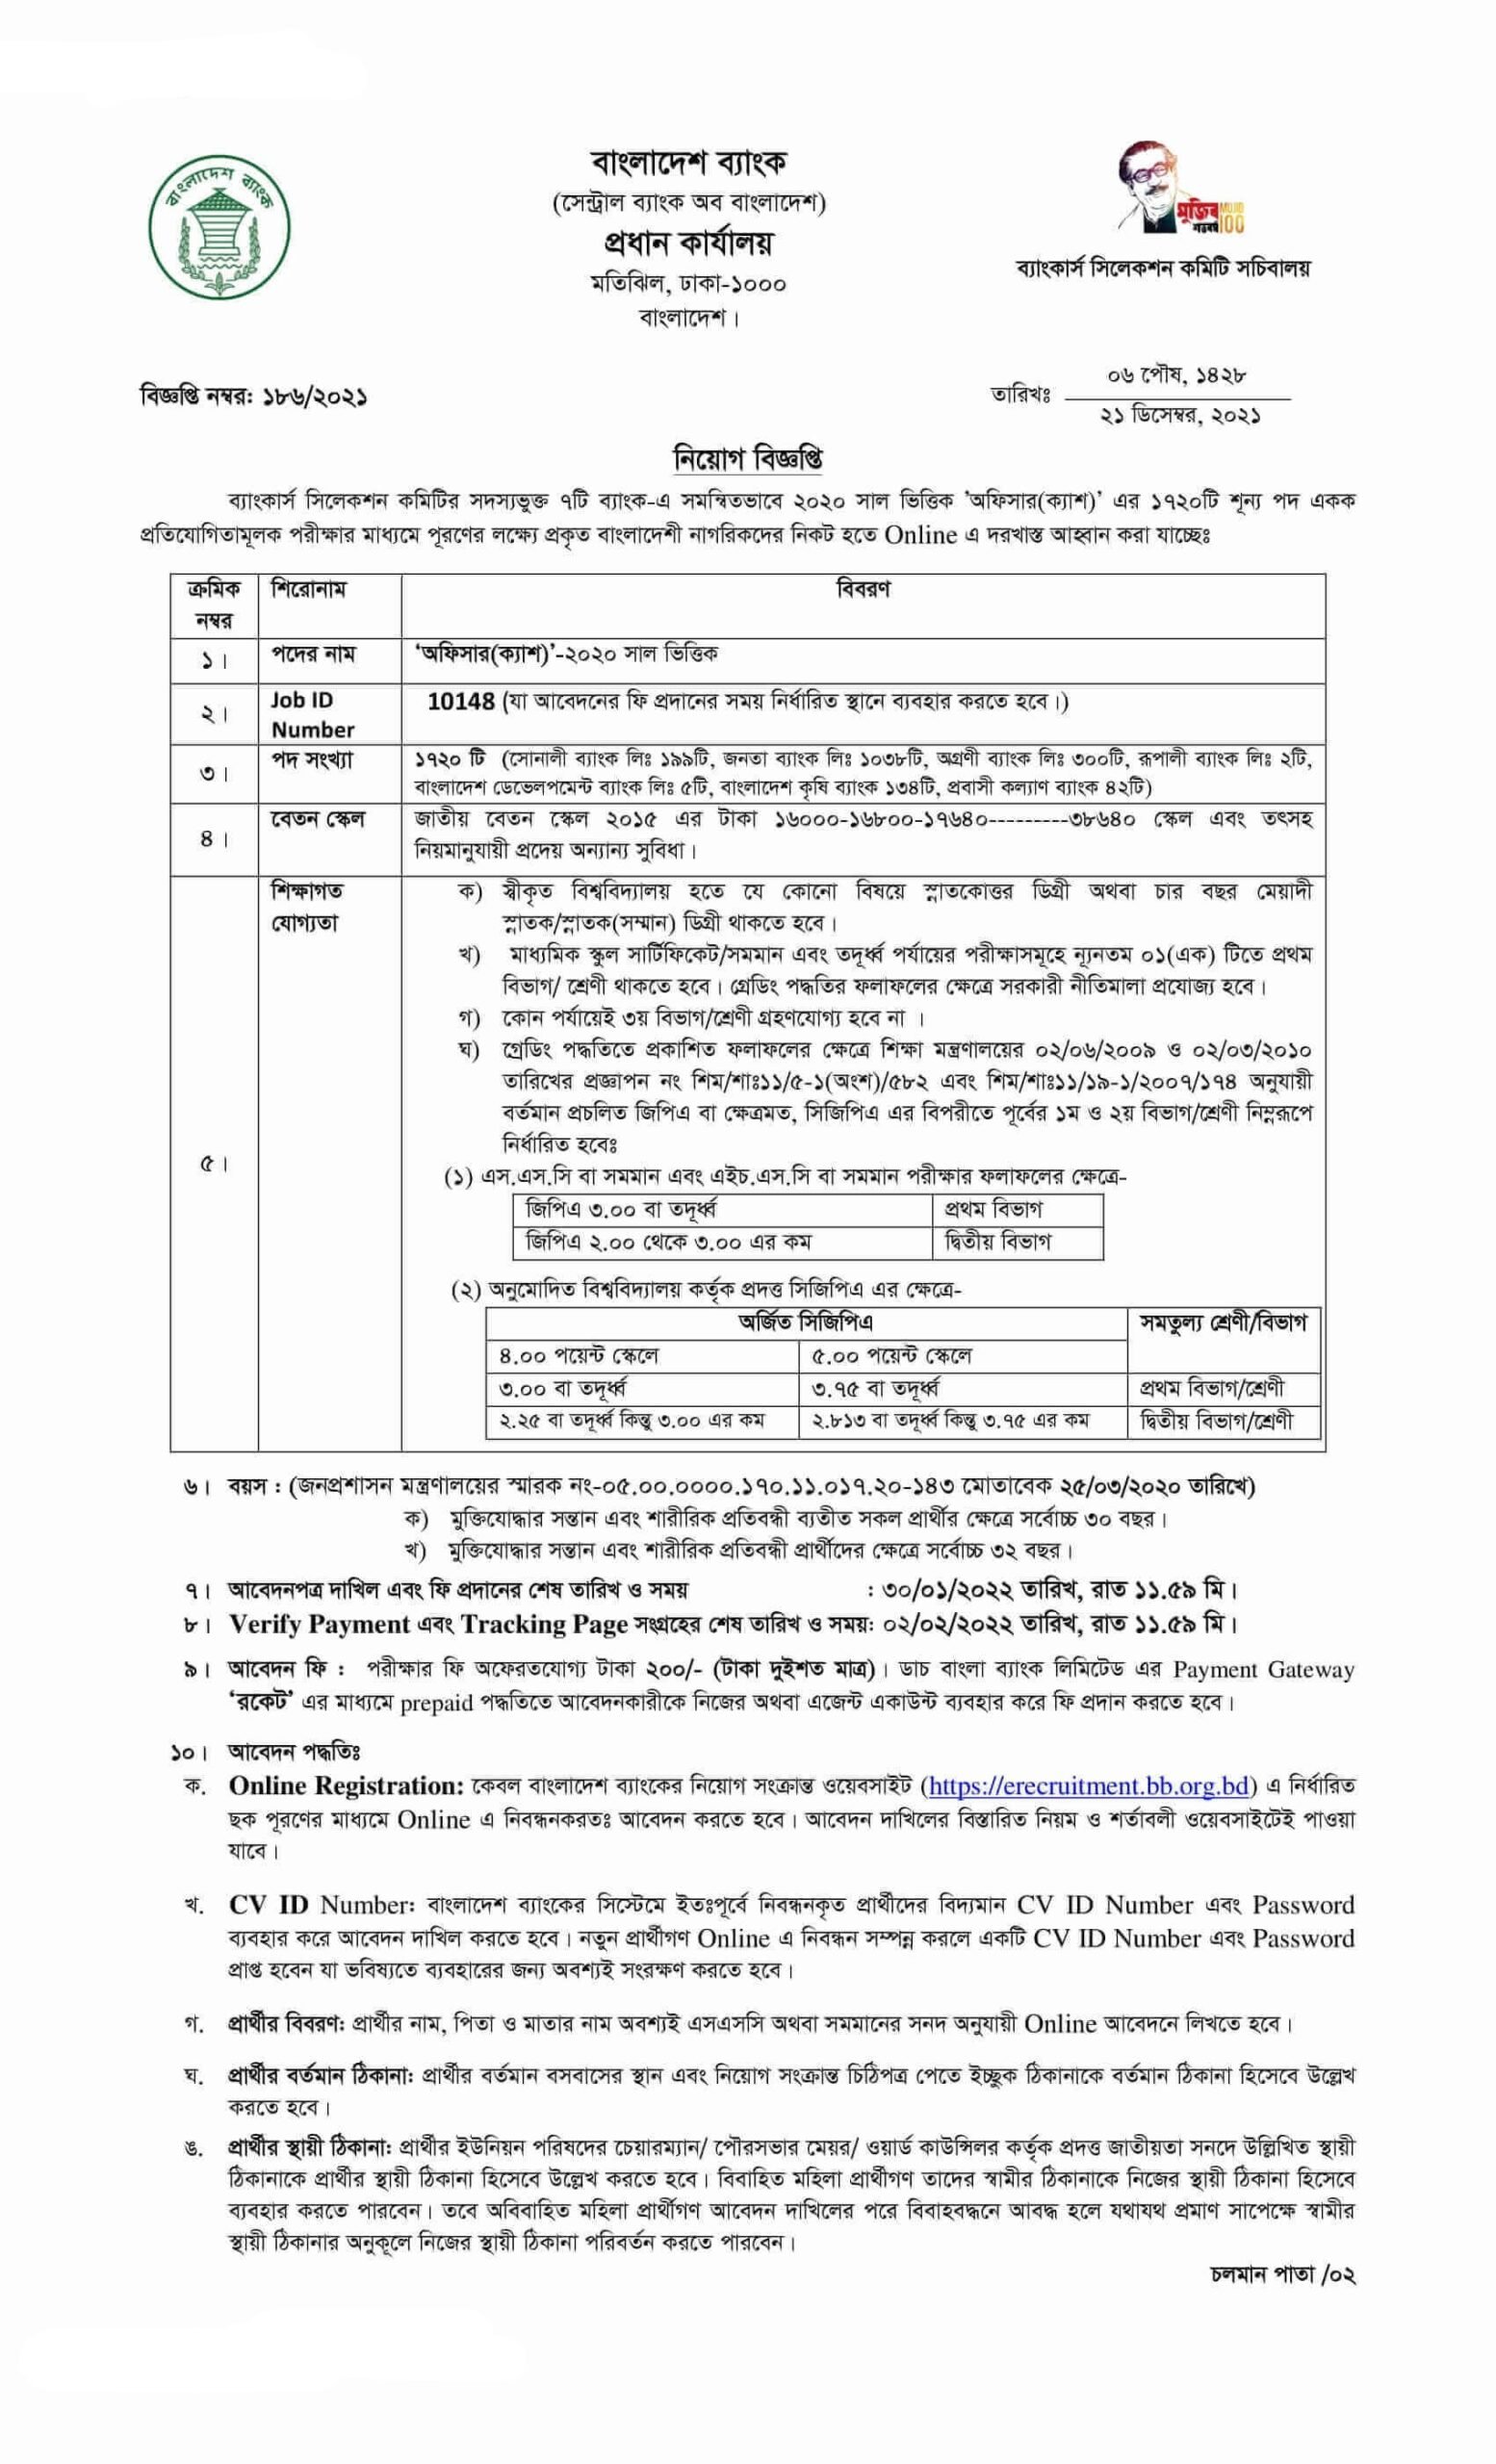 Probashi Kallyan Bank Job Circular 2022 PDF & Image Download